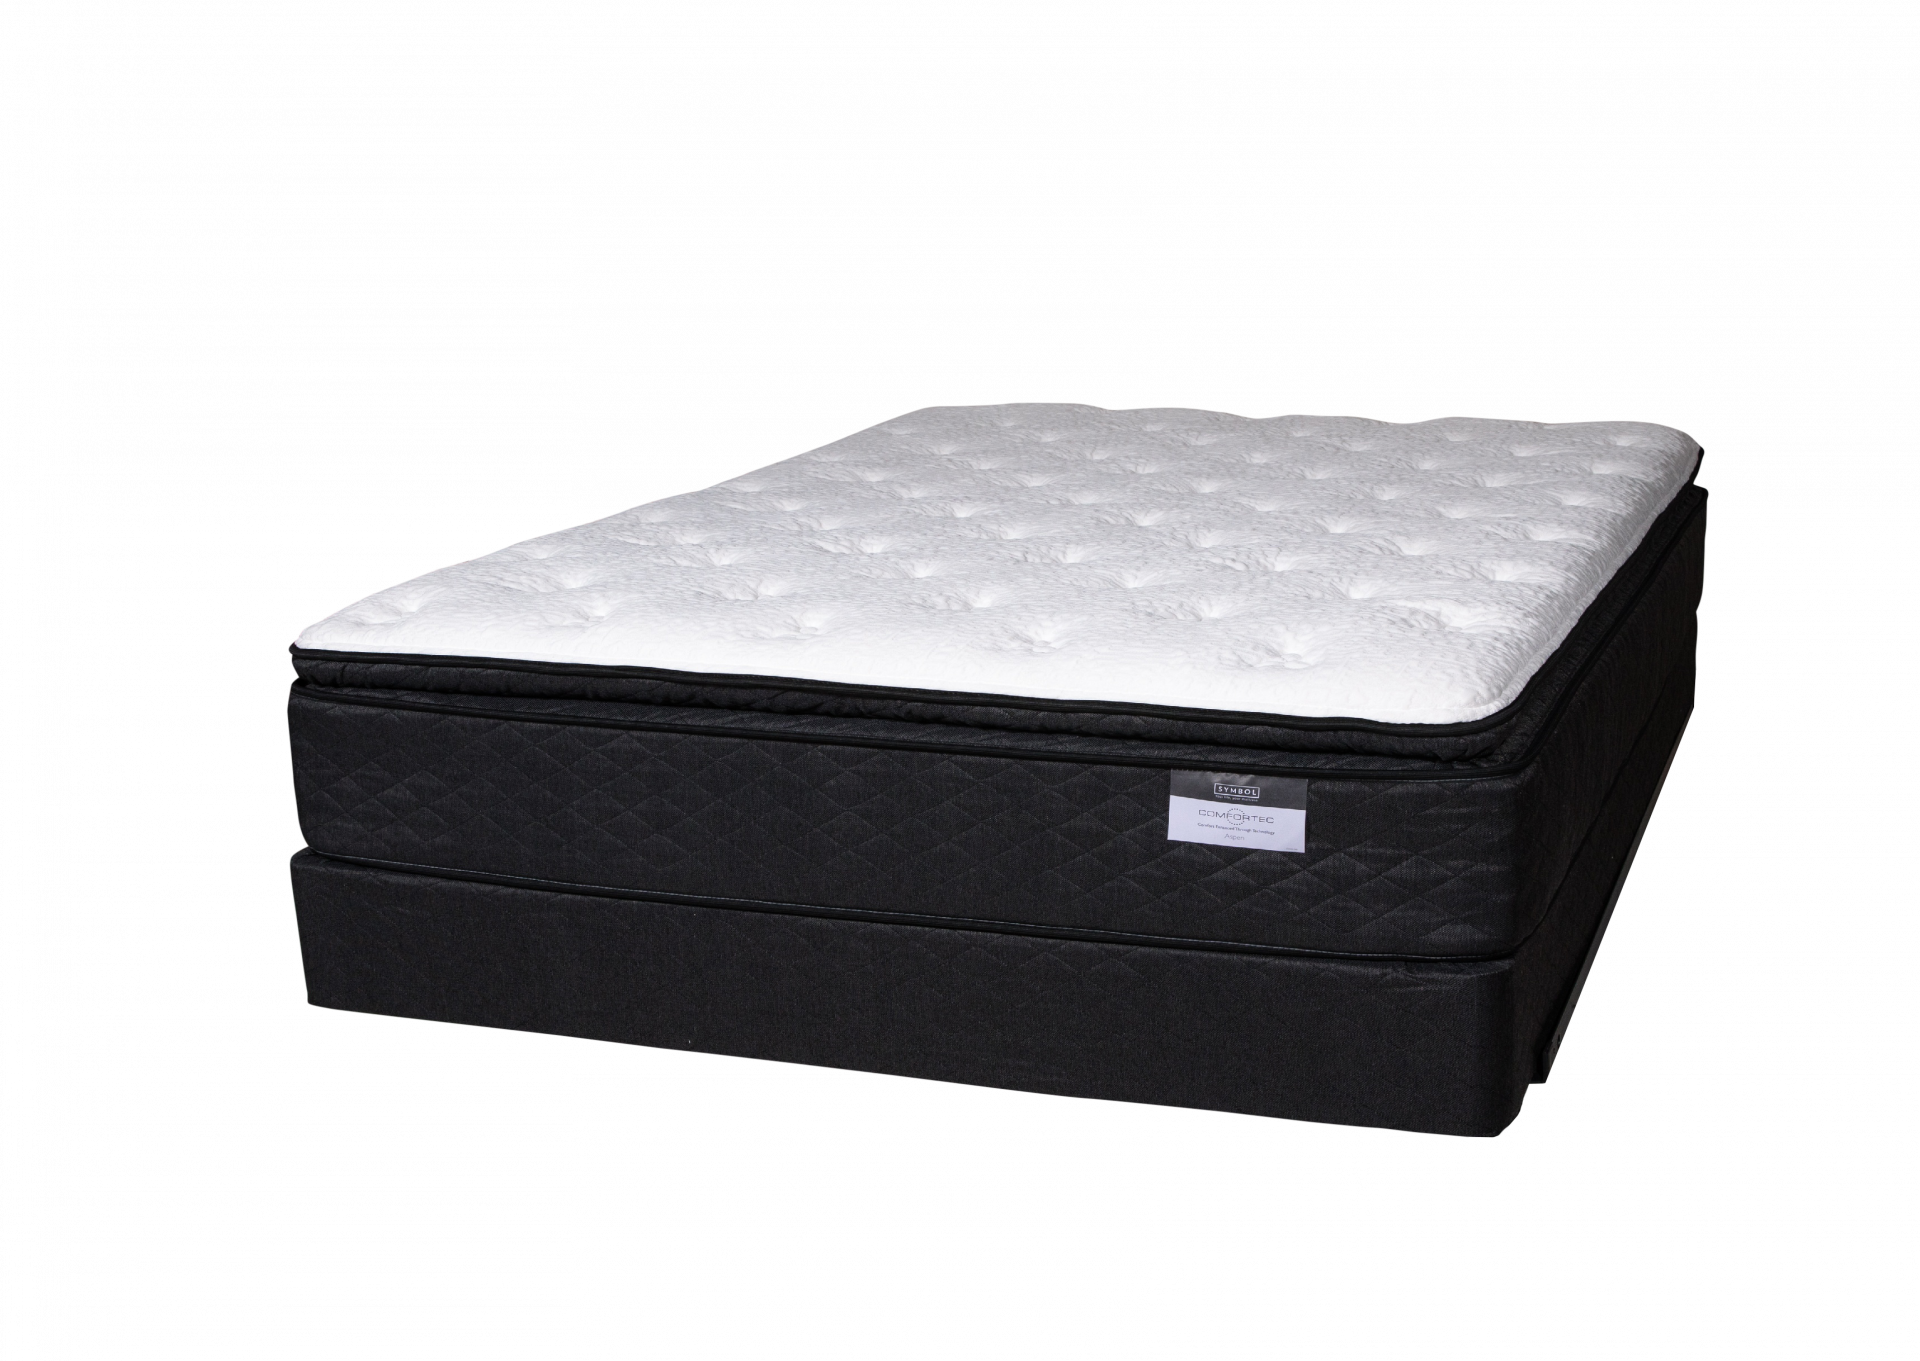 Aspen Pillow Top Twin size mattress set by Symbol Mattress,Symbol Mattress